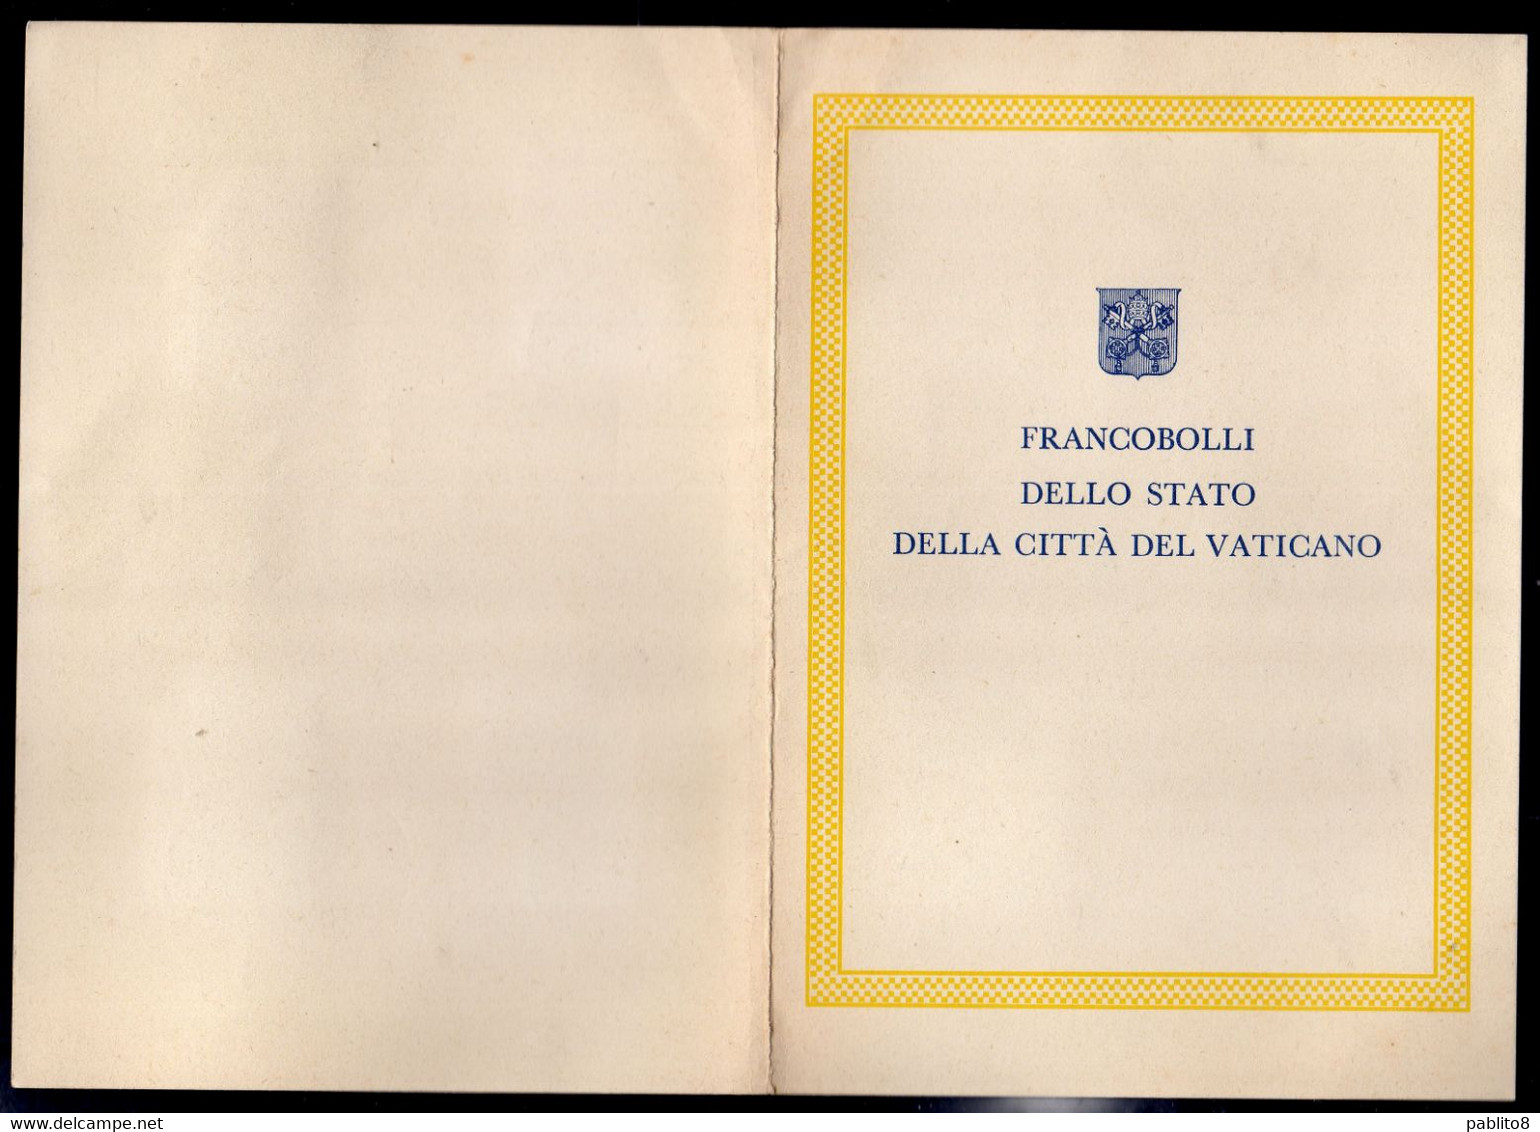 CITTÀ DEL VATICANO VATIKAN VATICAN 1961 S.PATRIZIO ST PATRICK SERIE COMPLETA COMPLETE SET LIBRETTO USATO BOOKLET USED - Libretti